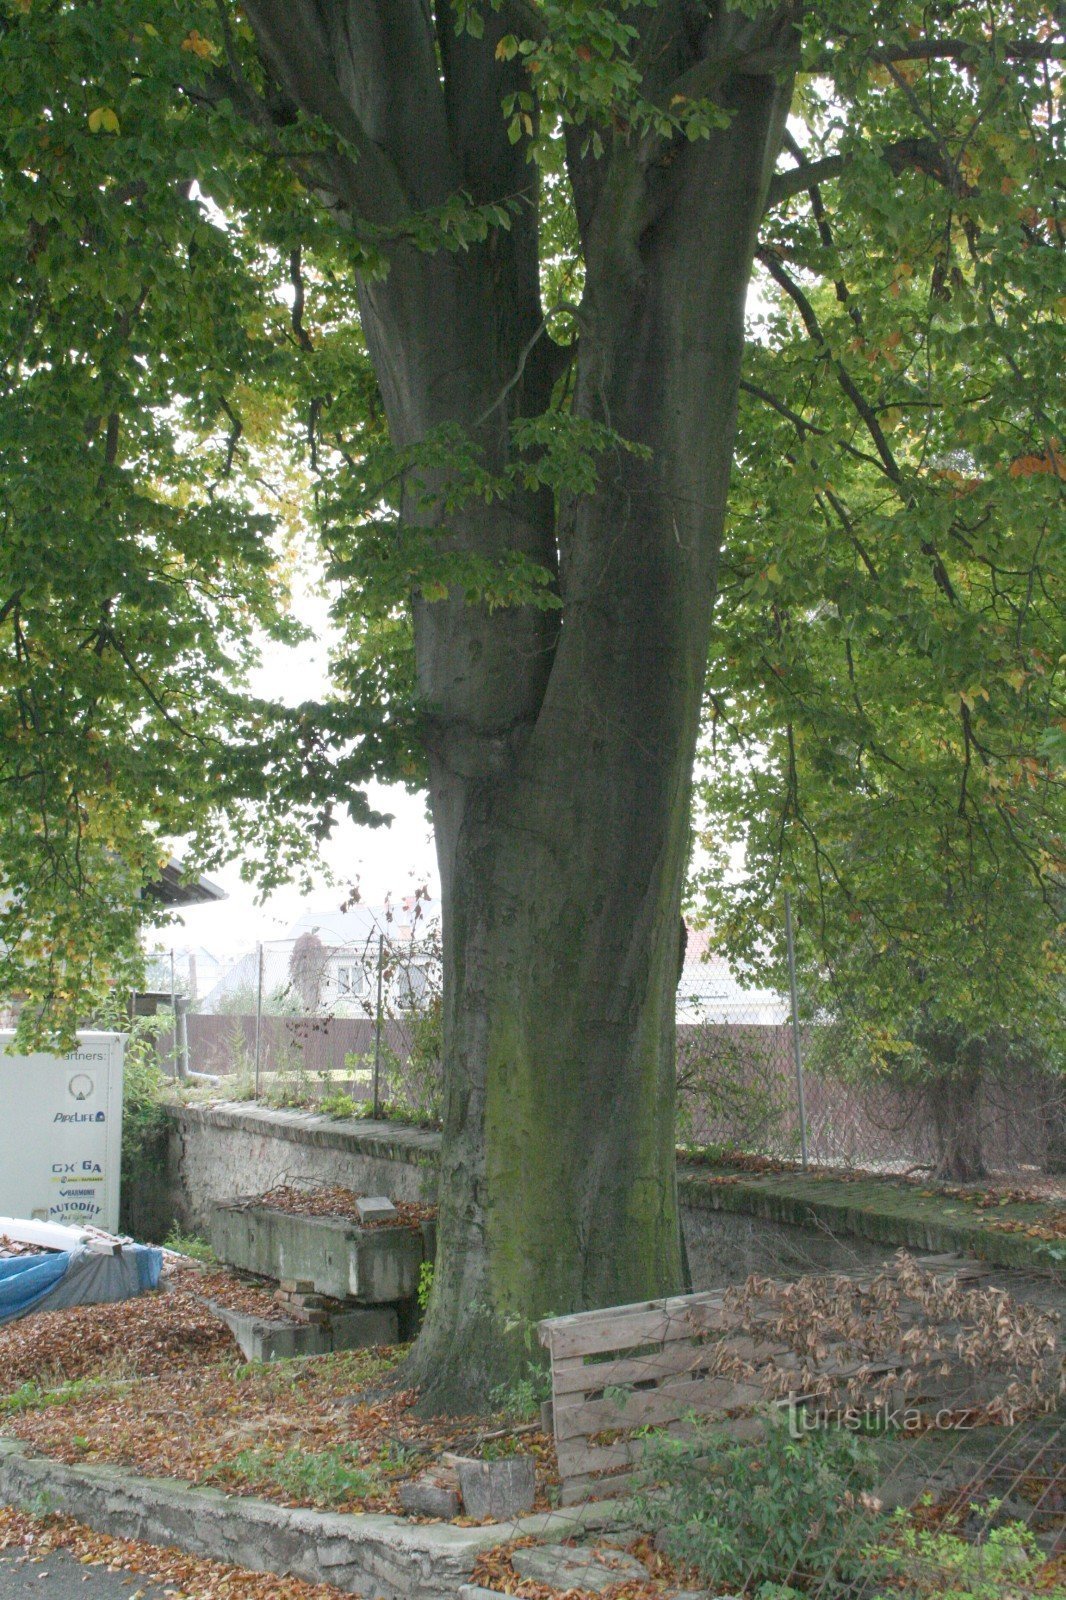 シュテルンベルク城下のブナの木